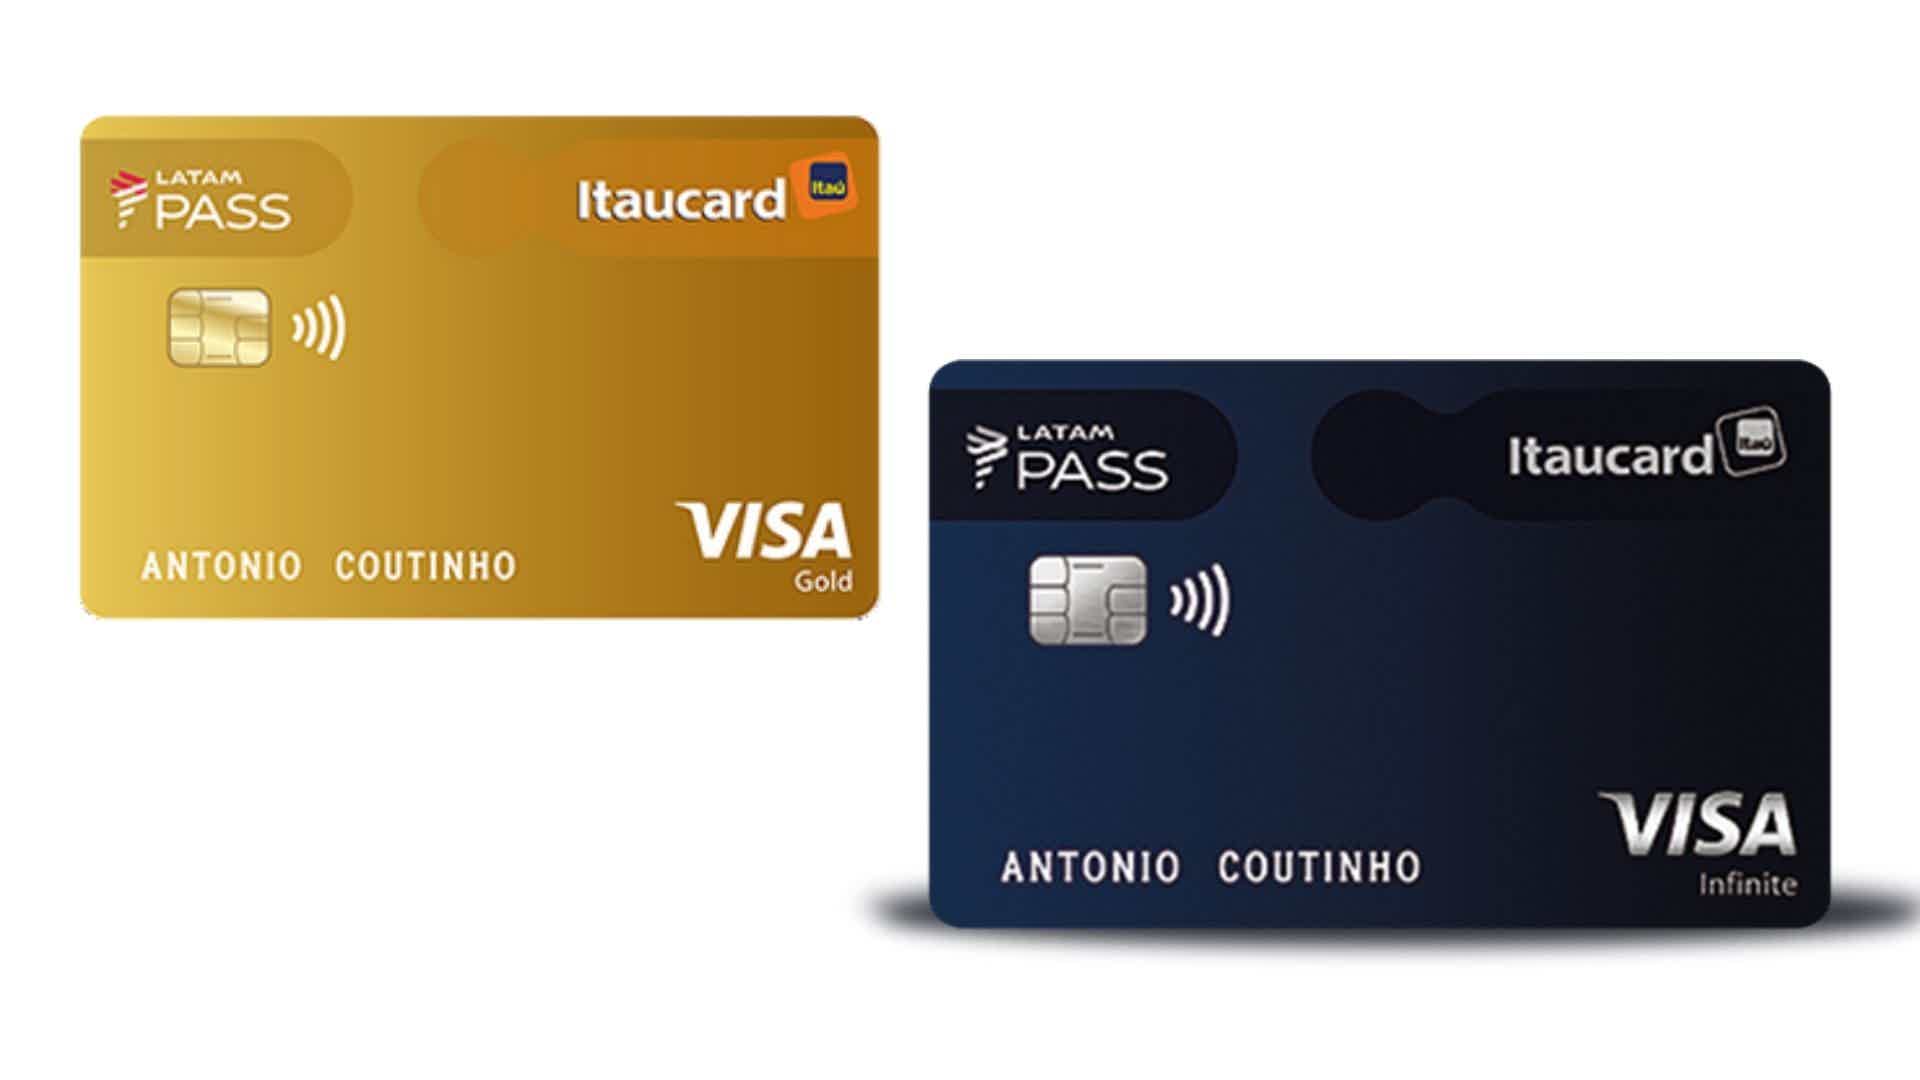 LATAM Pass Itaucard Visa Infinite ou LATAM Pass Itaucard Visa Gold? Fonte: Itaú.